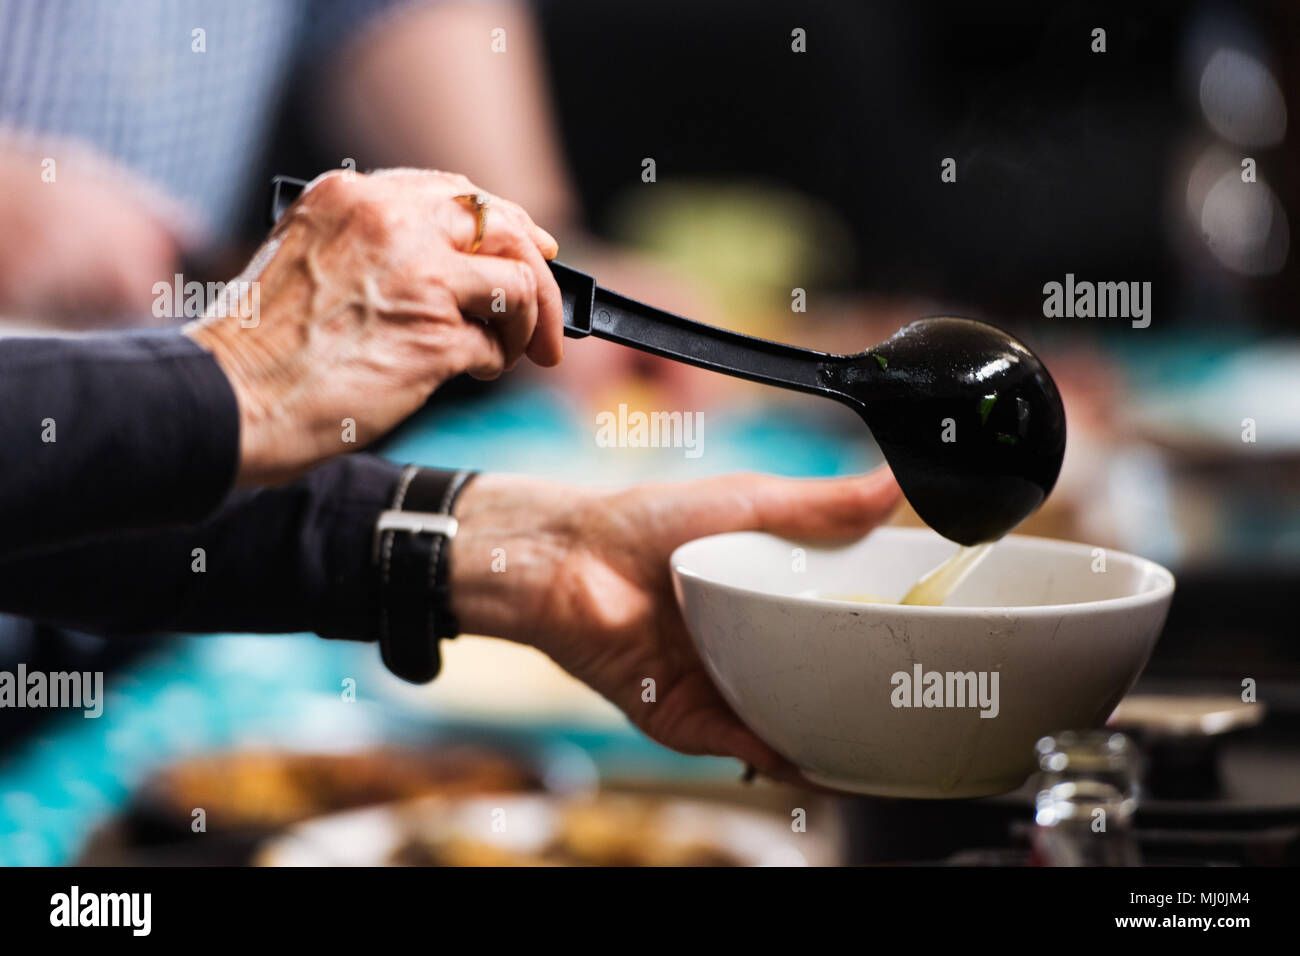 Hände ladling Suppe in einer Schüssel Stockfoto